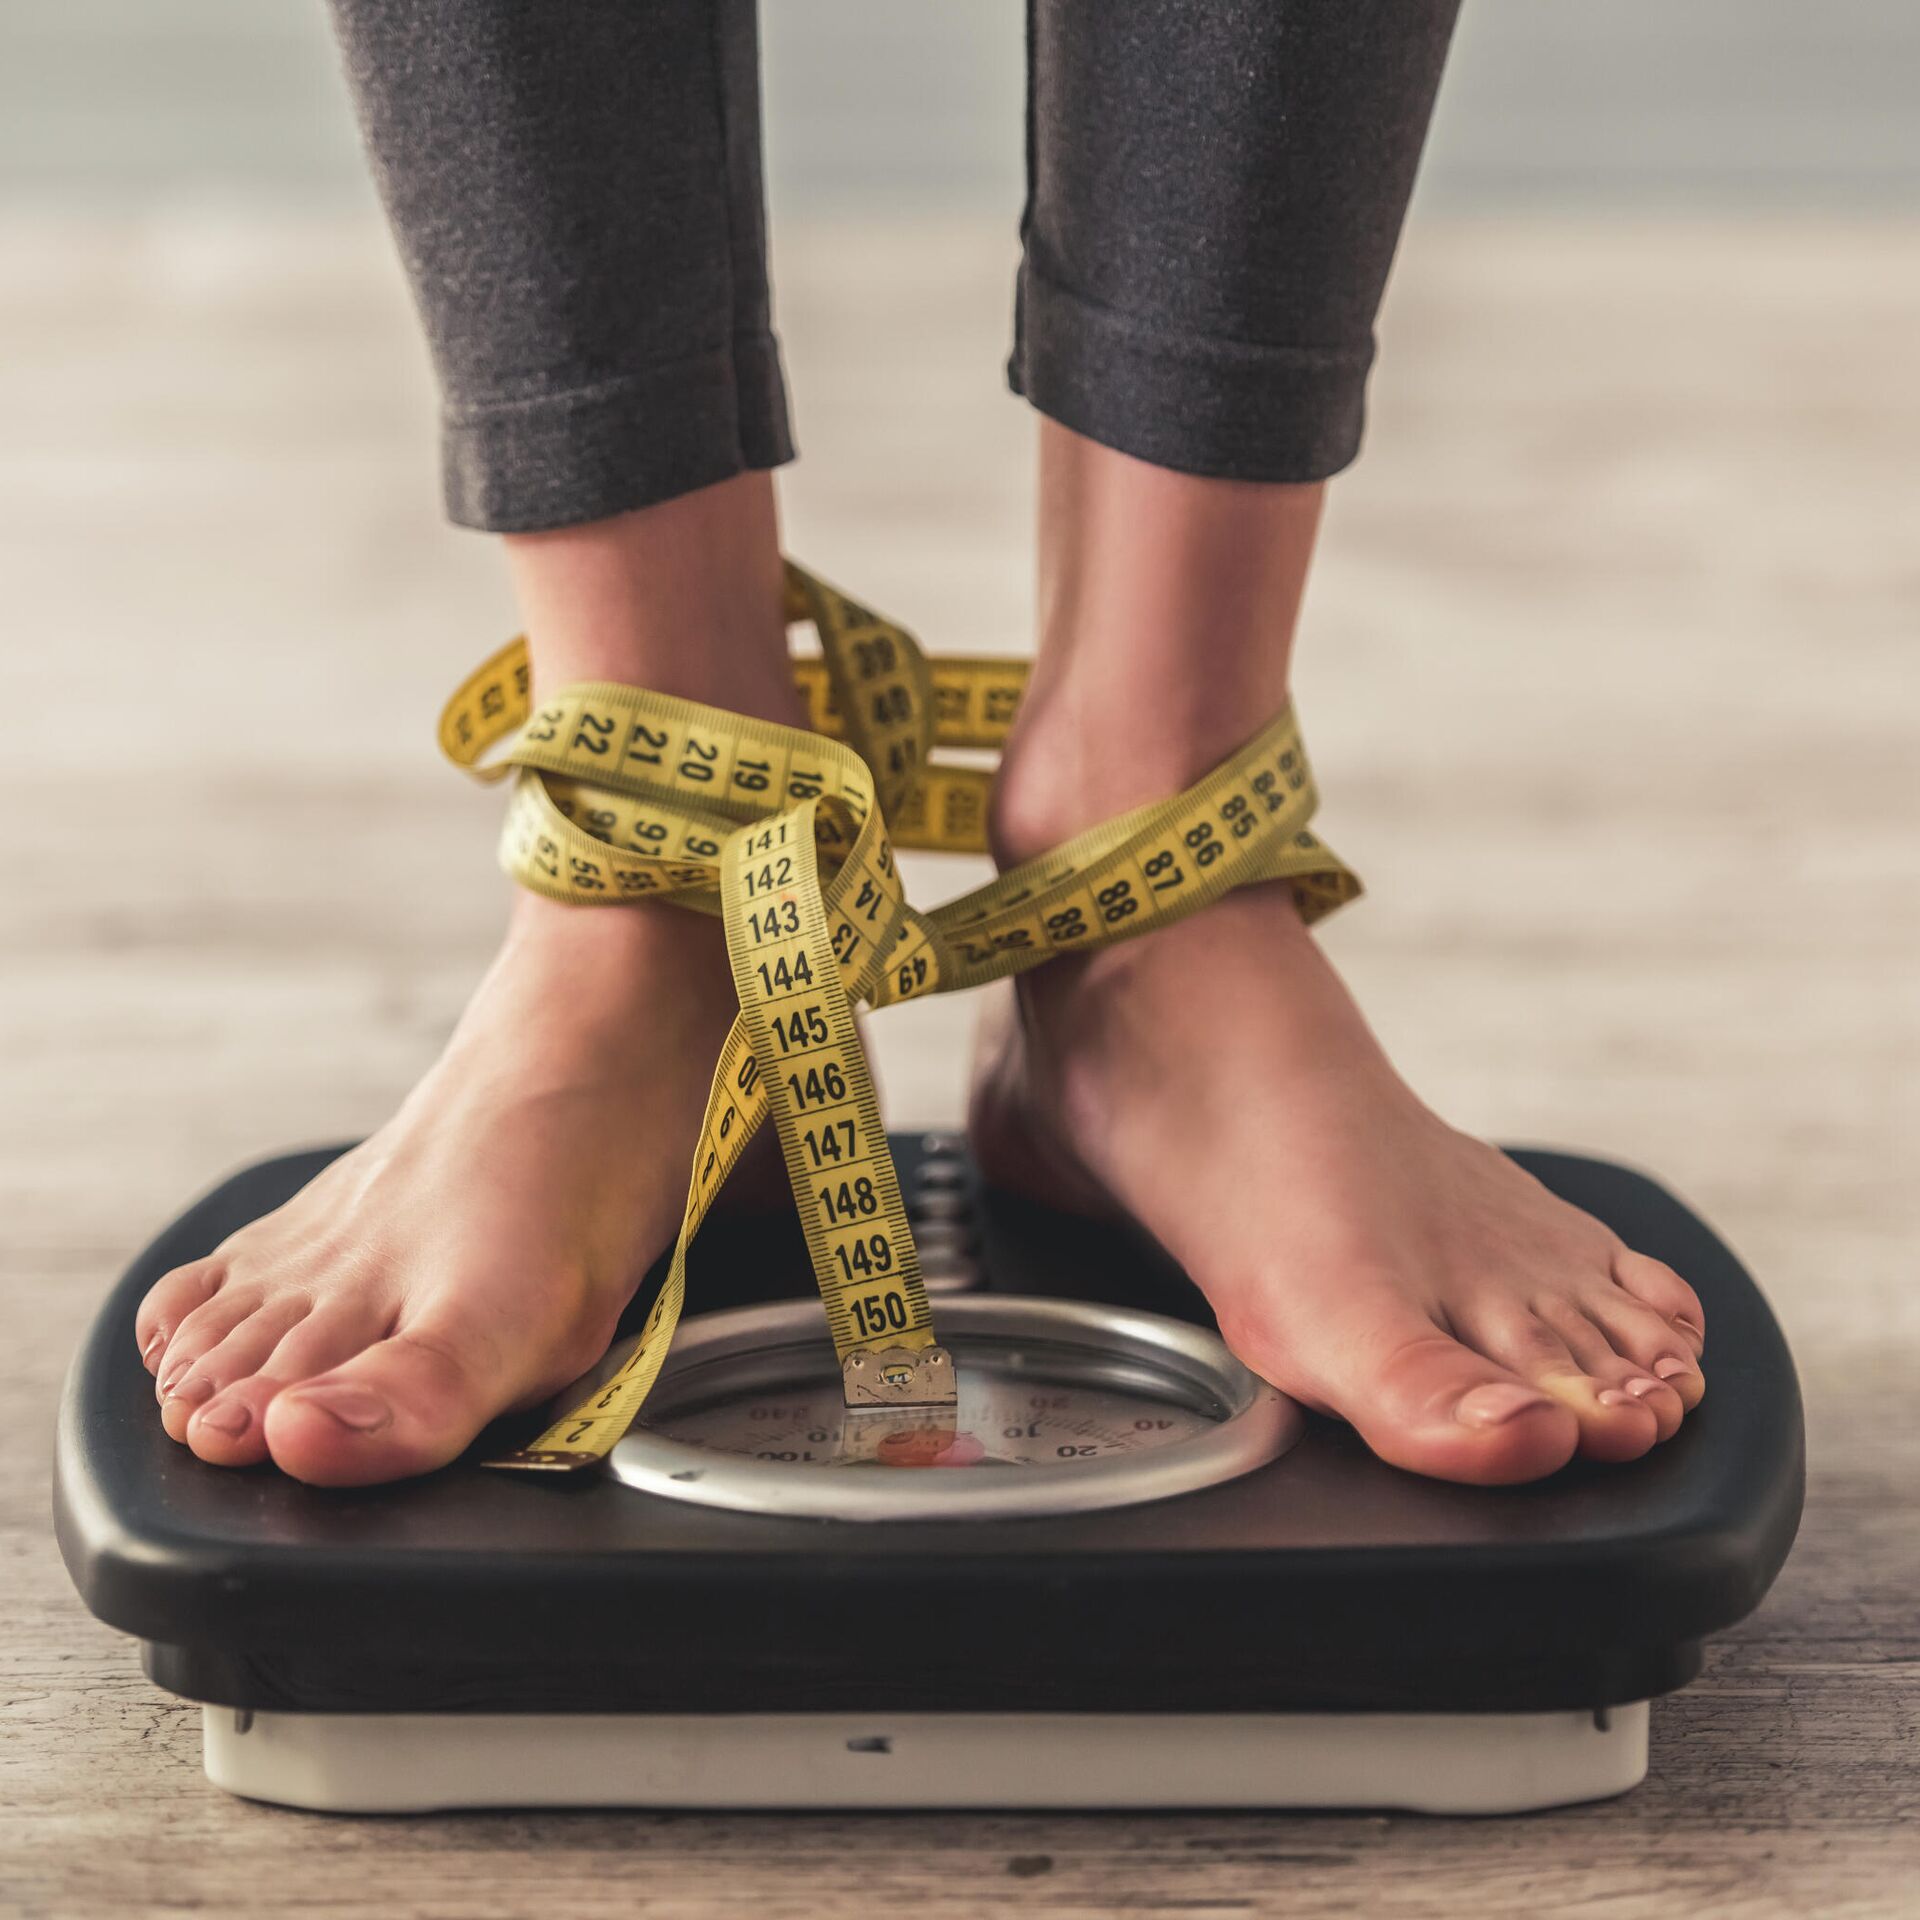 Похудеть за неделю: тренировки + план на 7 дней (ФОТО)